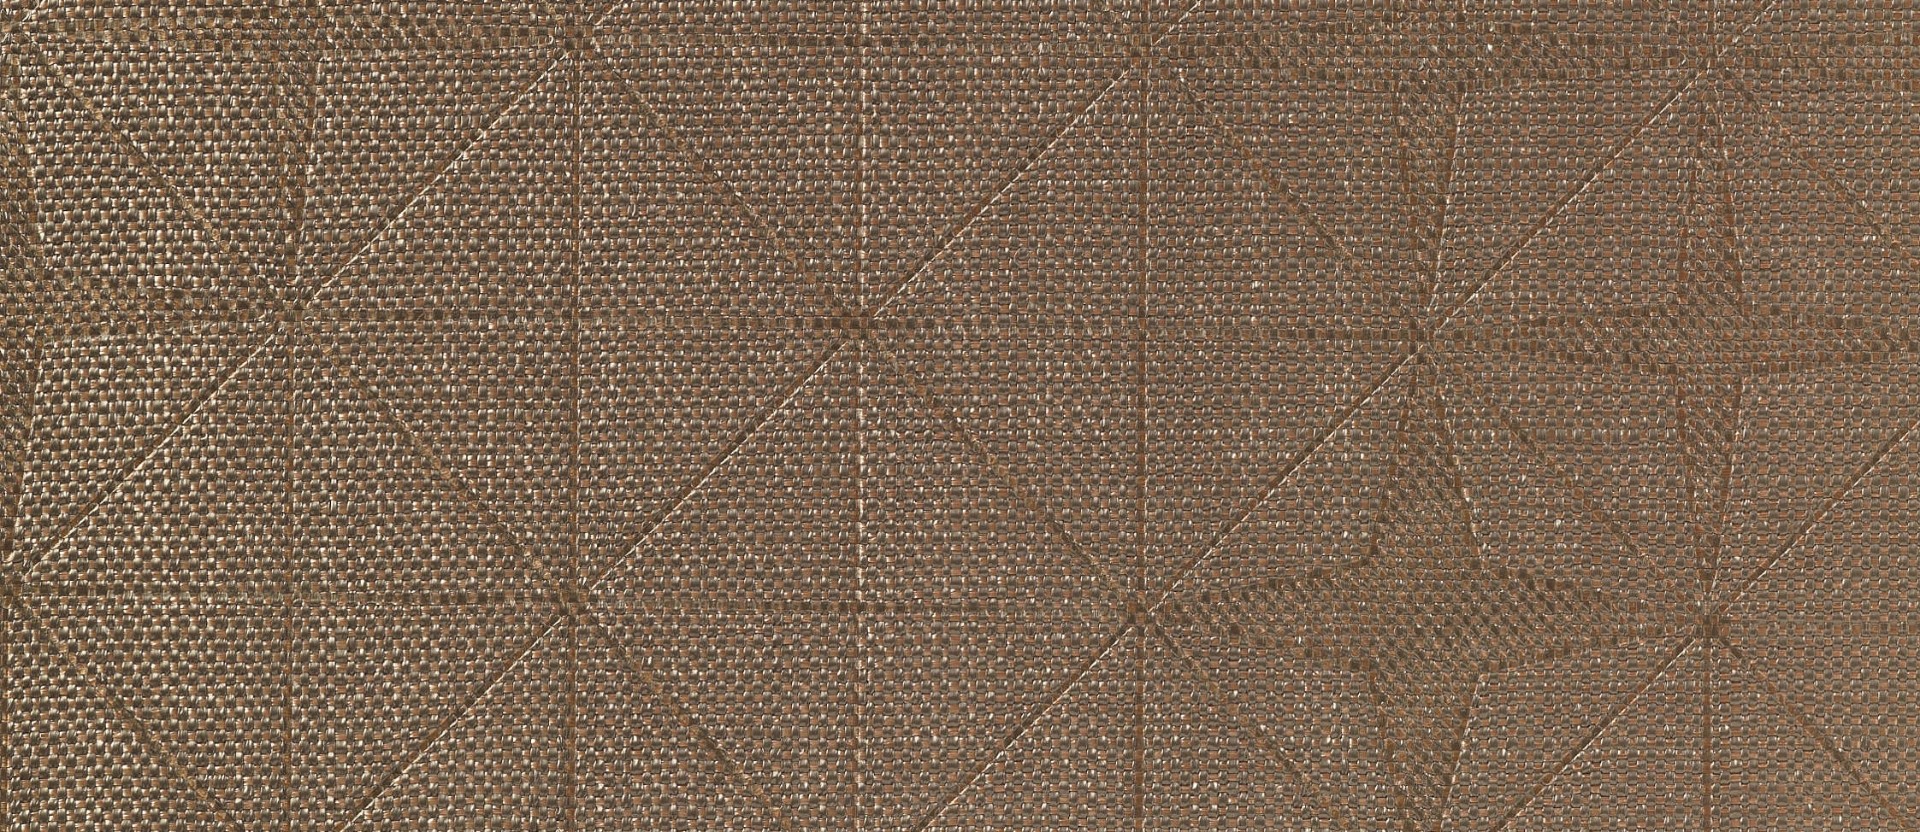 Текстильные обои Vescom Fragment Emboss 2541.07